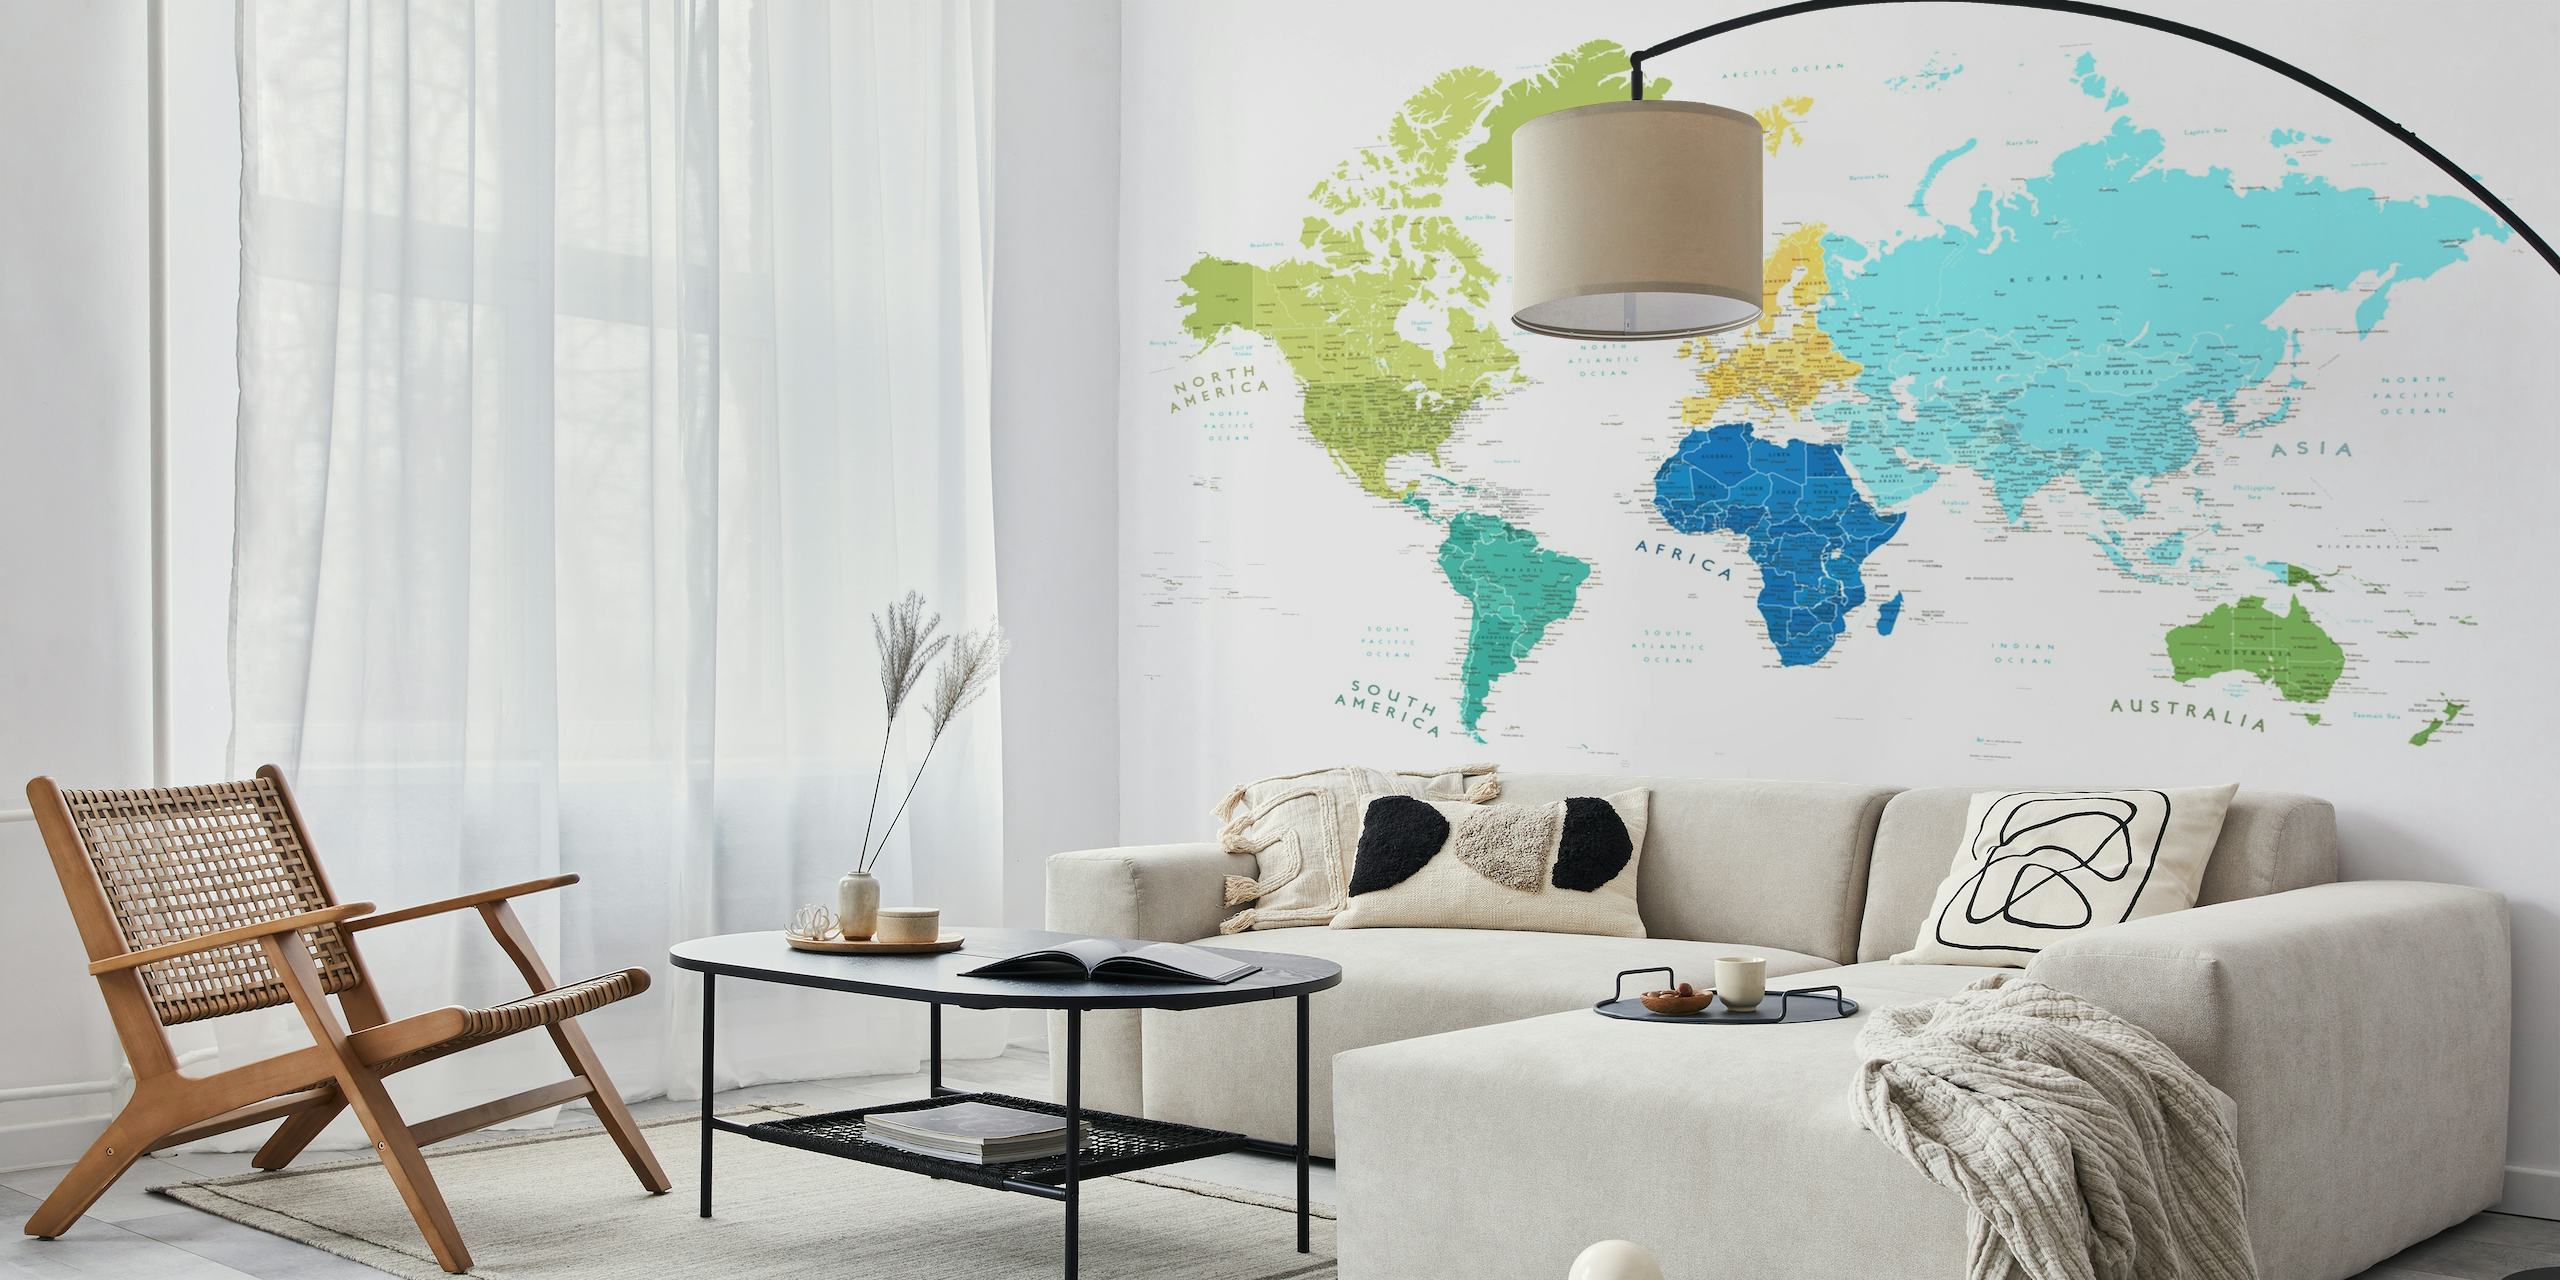 Farbenfrohes Wandbild mit Weltkarte, auf der die Antarktis deutlich zu erkennen ist, wobei jeder Kontinent in einer anderen Farbe dargestellt ist